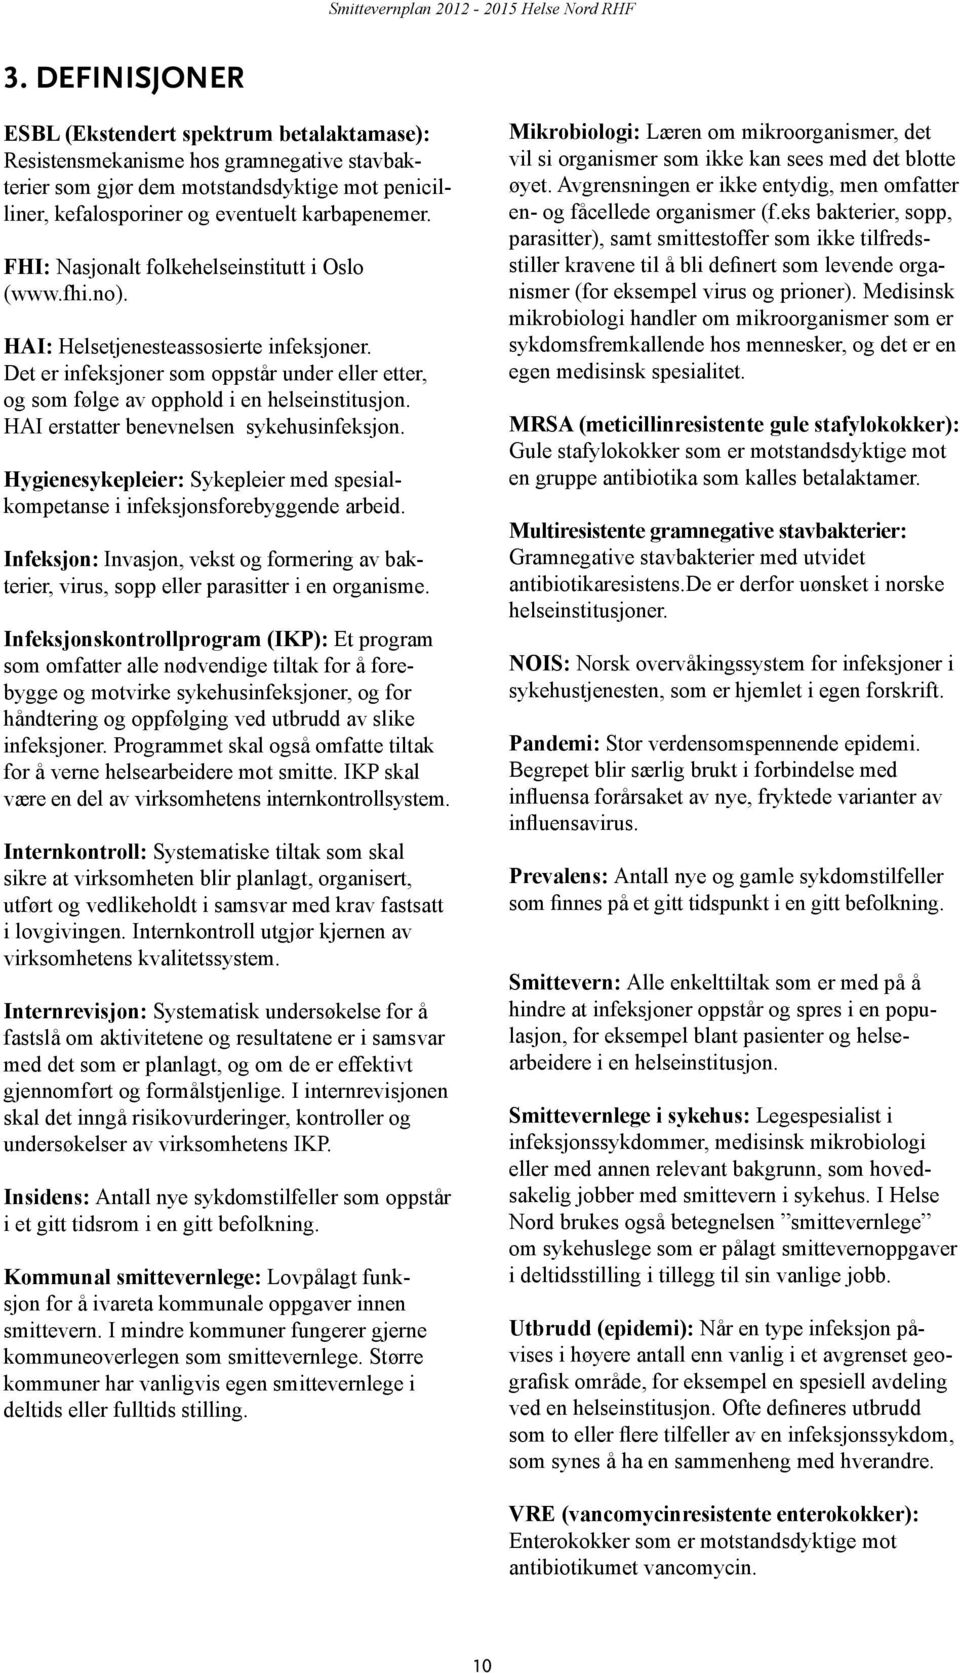 FHI: Nasjonalt folkehelseinstitutt i Oslo (www.fhi.no). HAI: Helsetjenesteassosierte infeksjoner. Det er infeksjoner som oppstår under eller etter, og som følge av opphold i en helseinstitusjon.